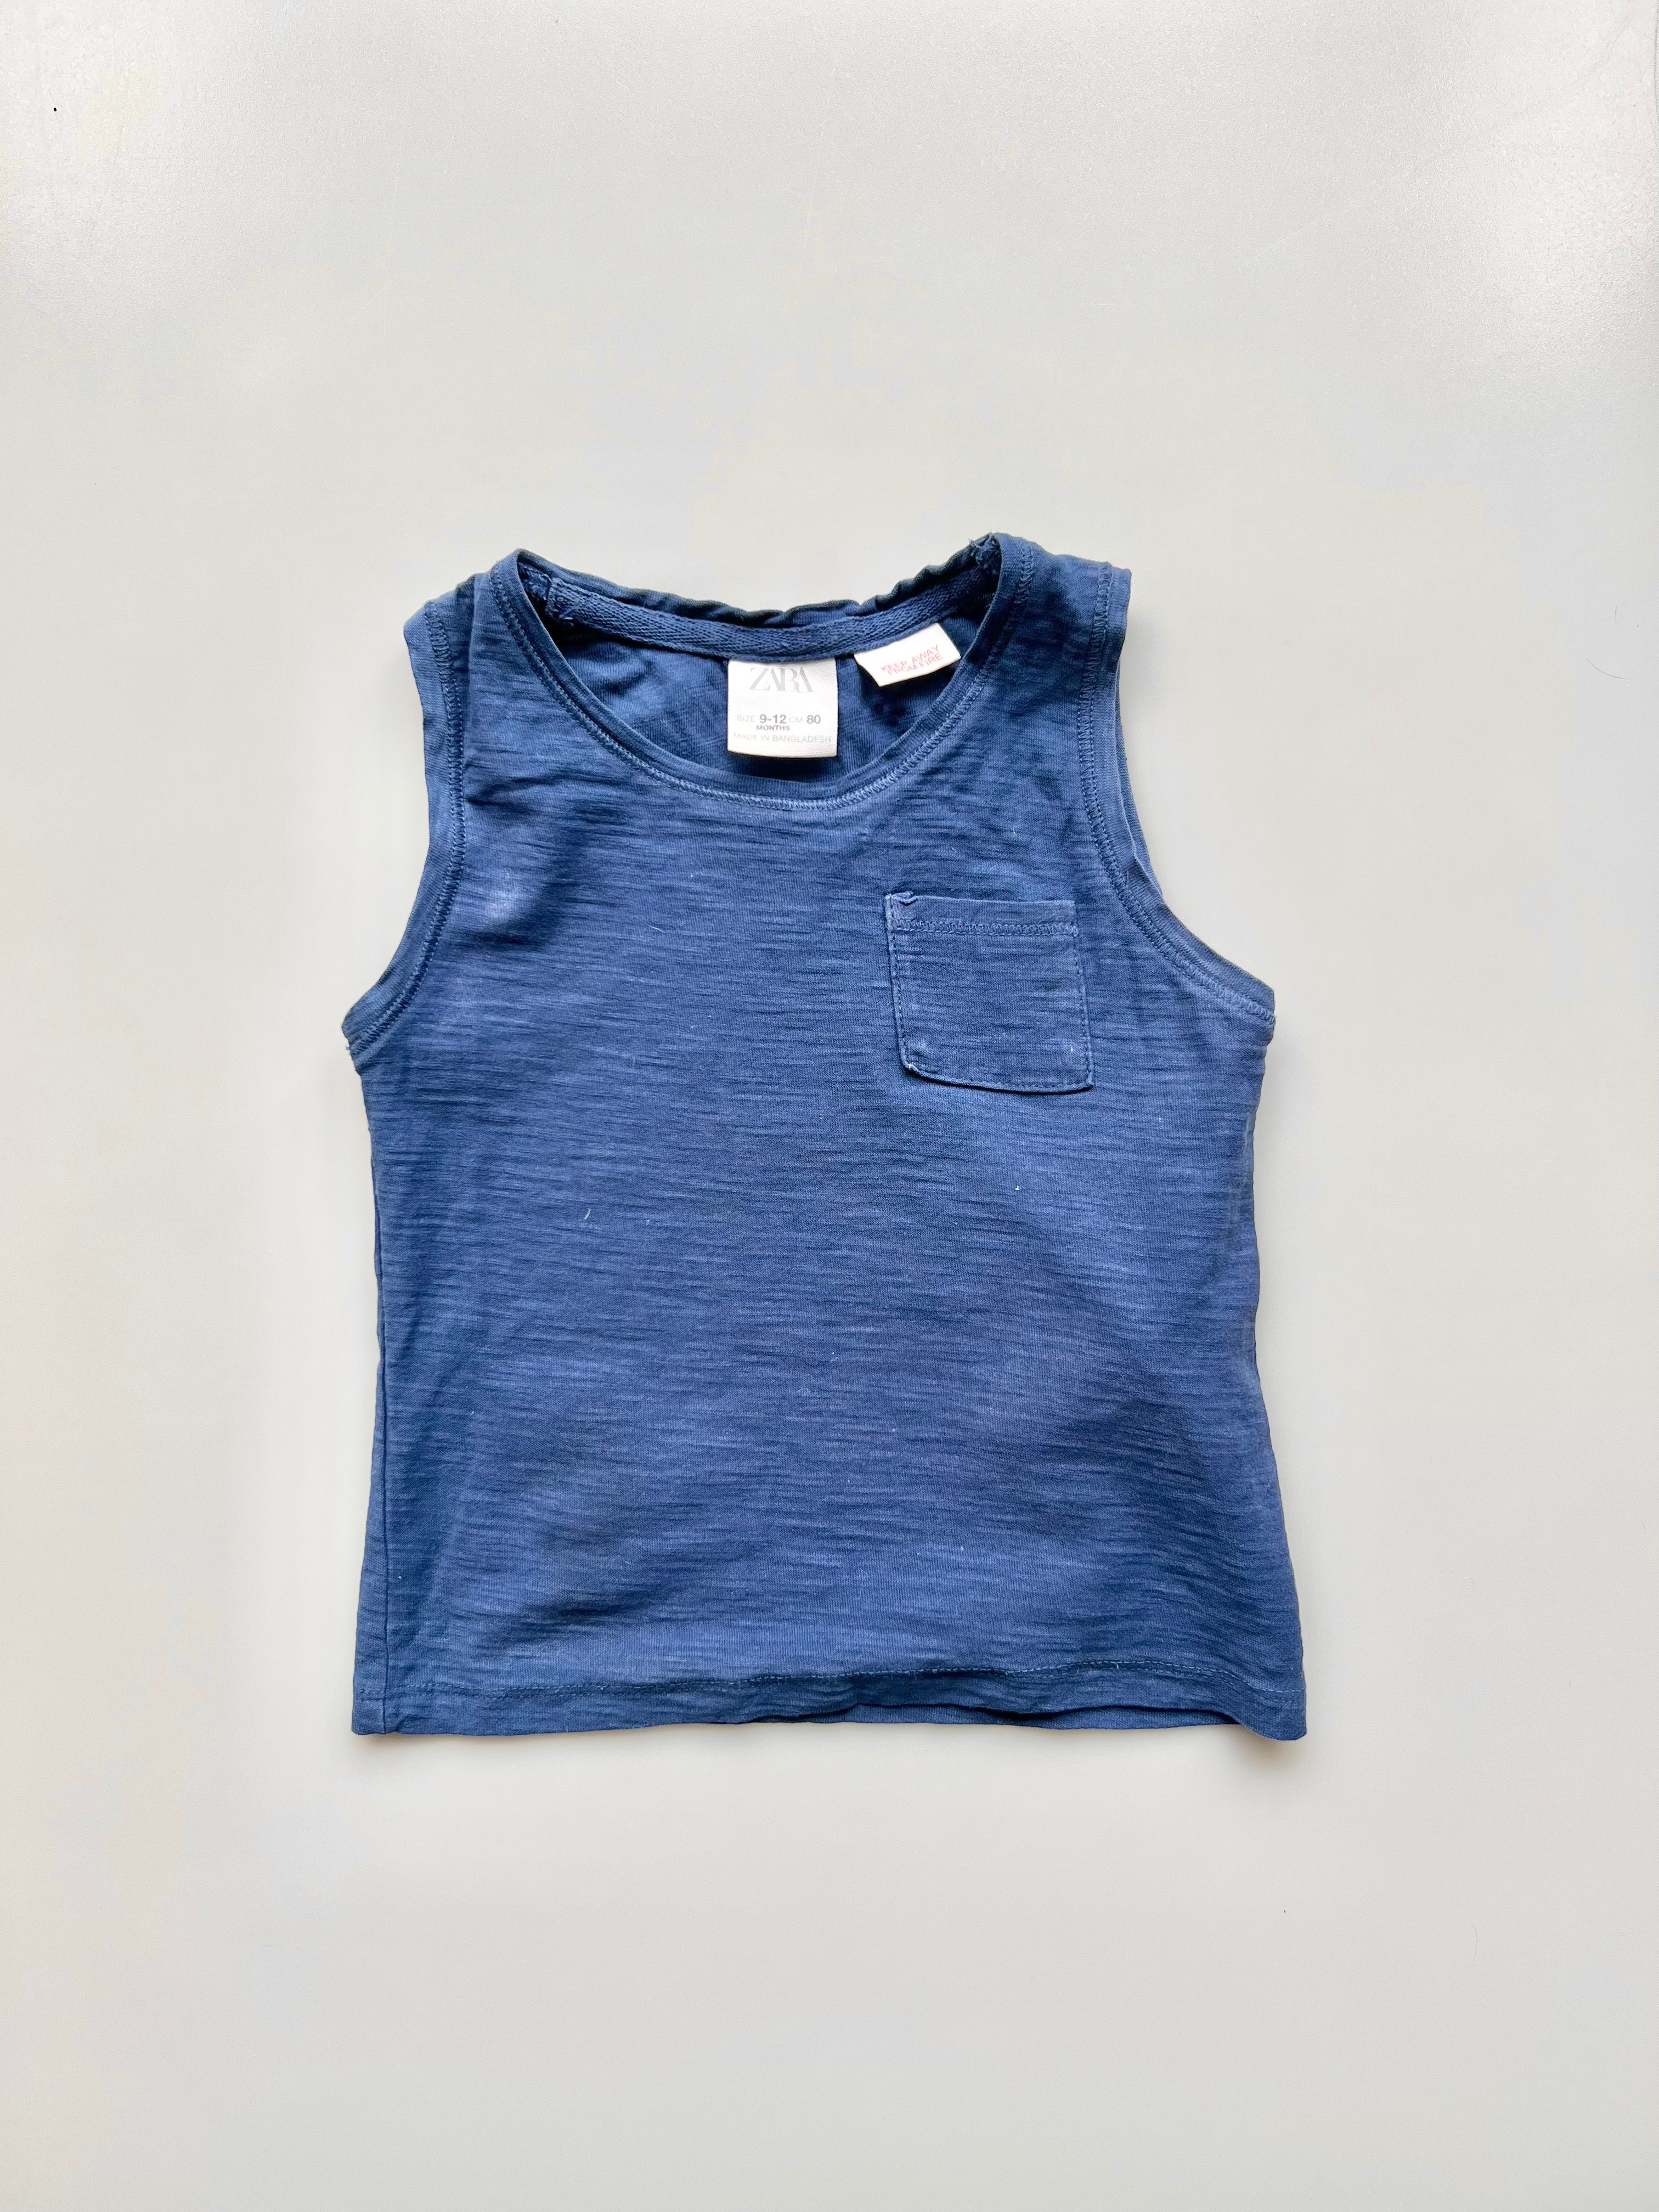 Zara Blue Marl Vest 9-12 Months